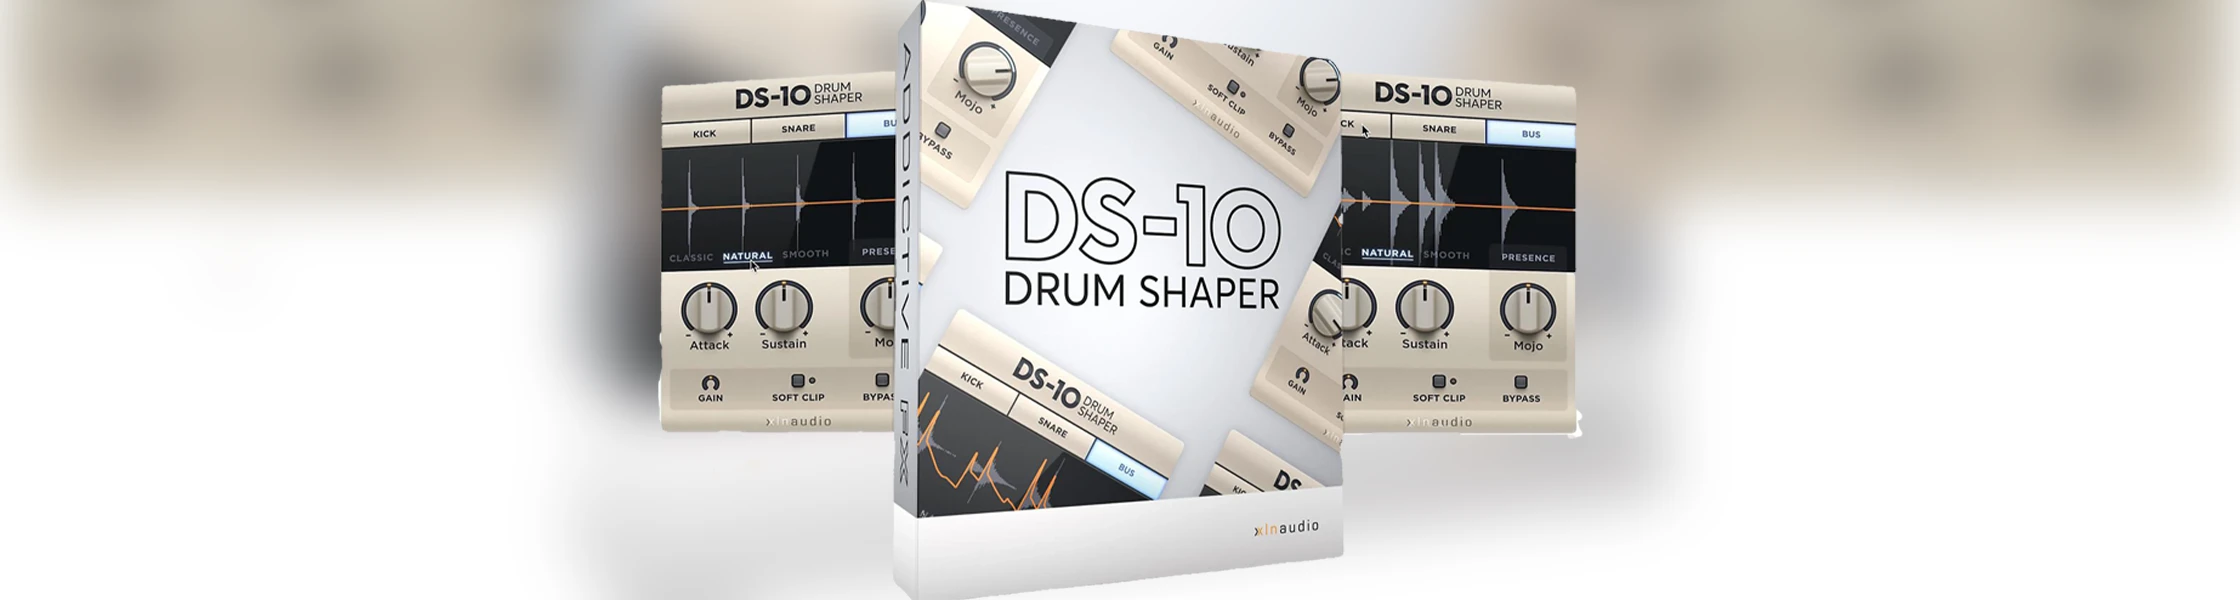 دانلود افکت درام XLN Audio DS-10 Drum Shaper v1.3.1-R2R